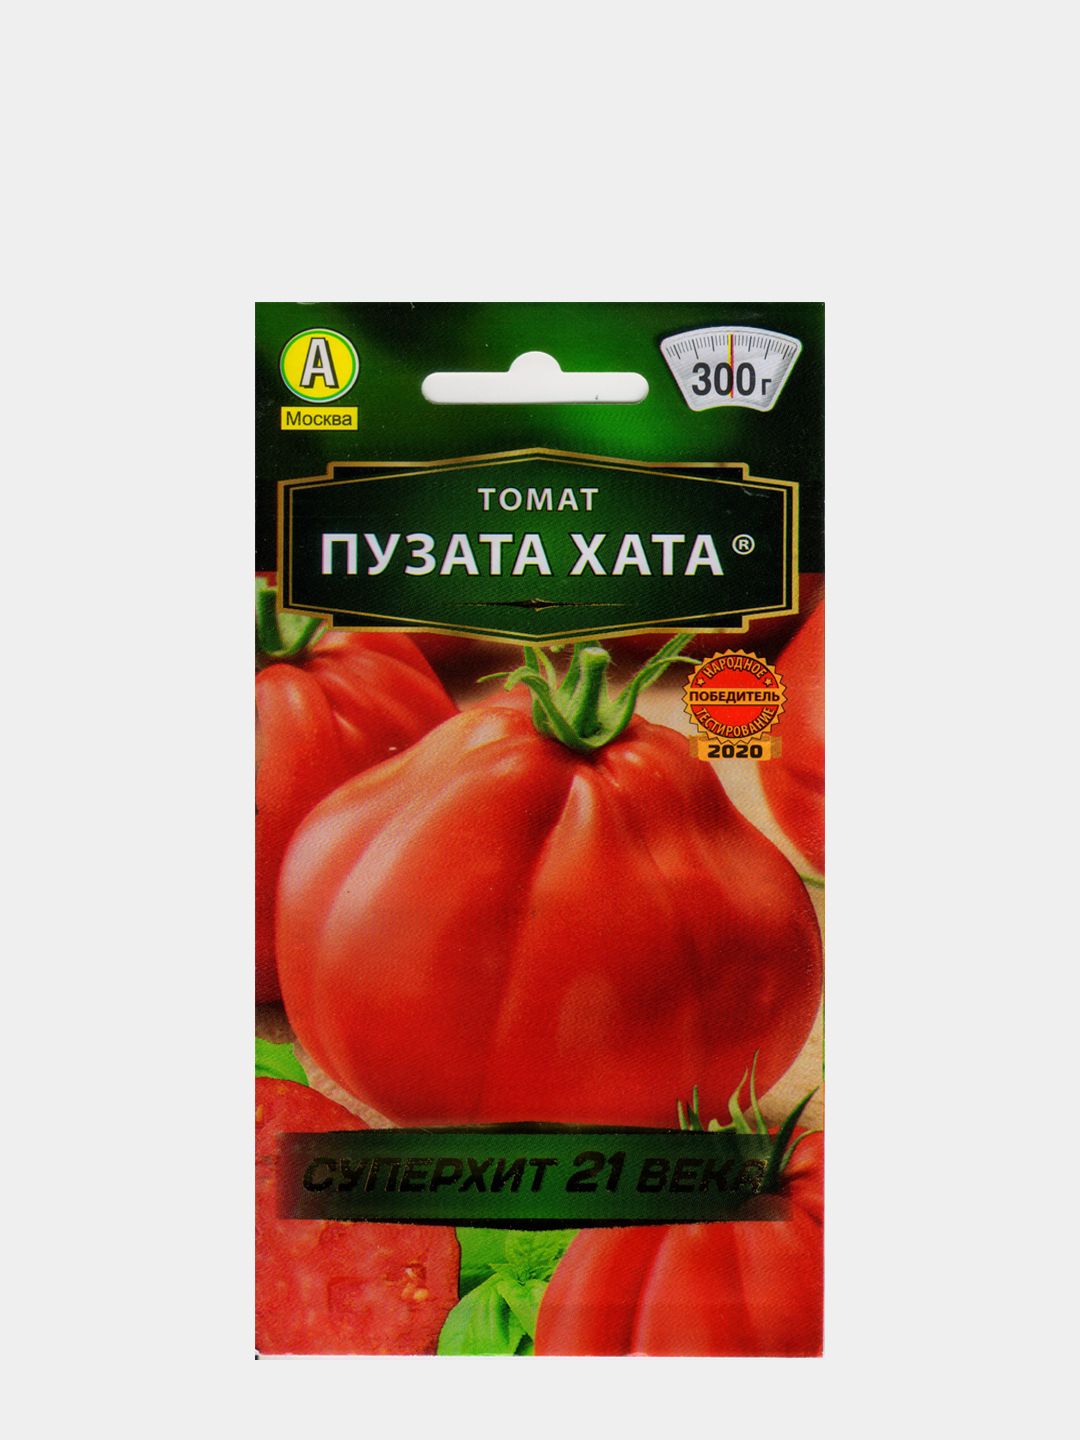 Сорт помидор богата хата. Семена томат Пузата хата. Сорт помидор Пузата хата. Томат богата хата f1. Томат толстопуз.